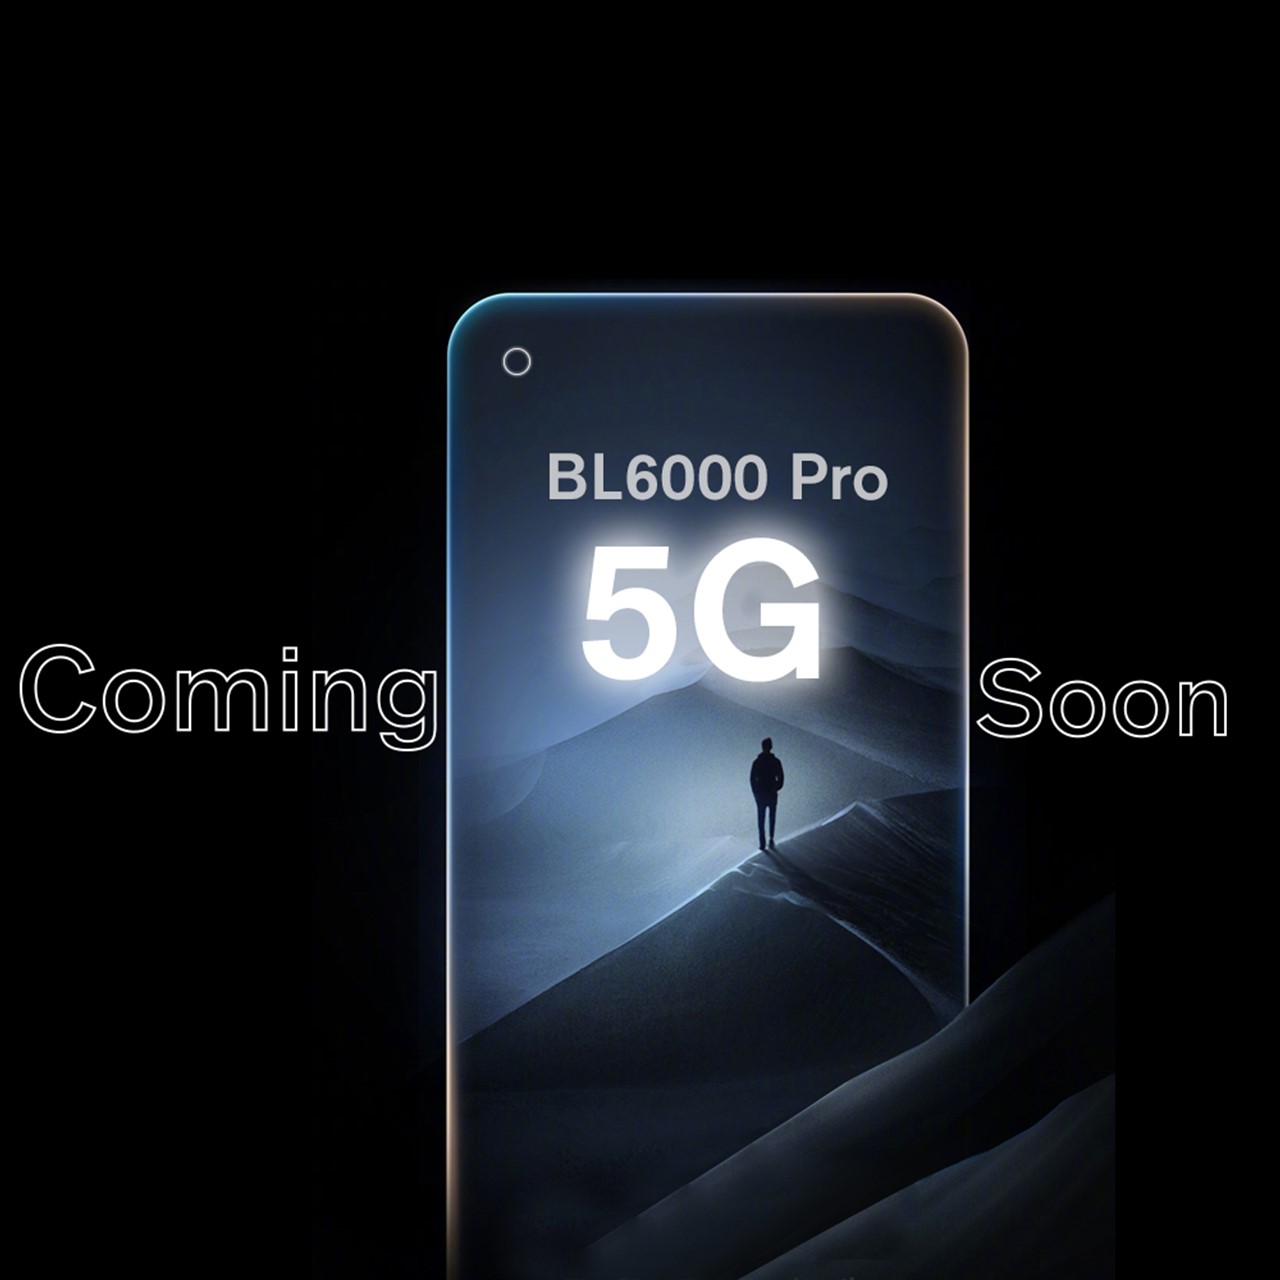 世界初の5Gタフネススマホ「BL6000 Pro 5G」はIndiegogoでクラファン開始予定～薄型/スタイリッシュタフネススマホをちら見せ : PR